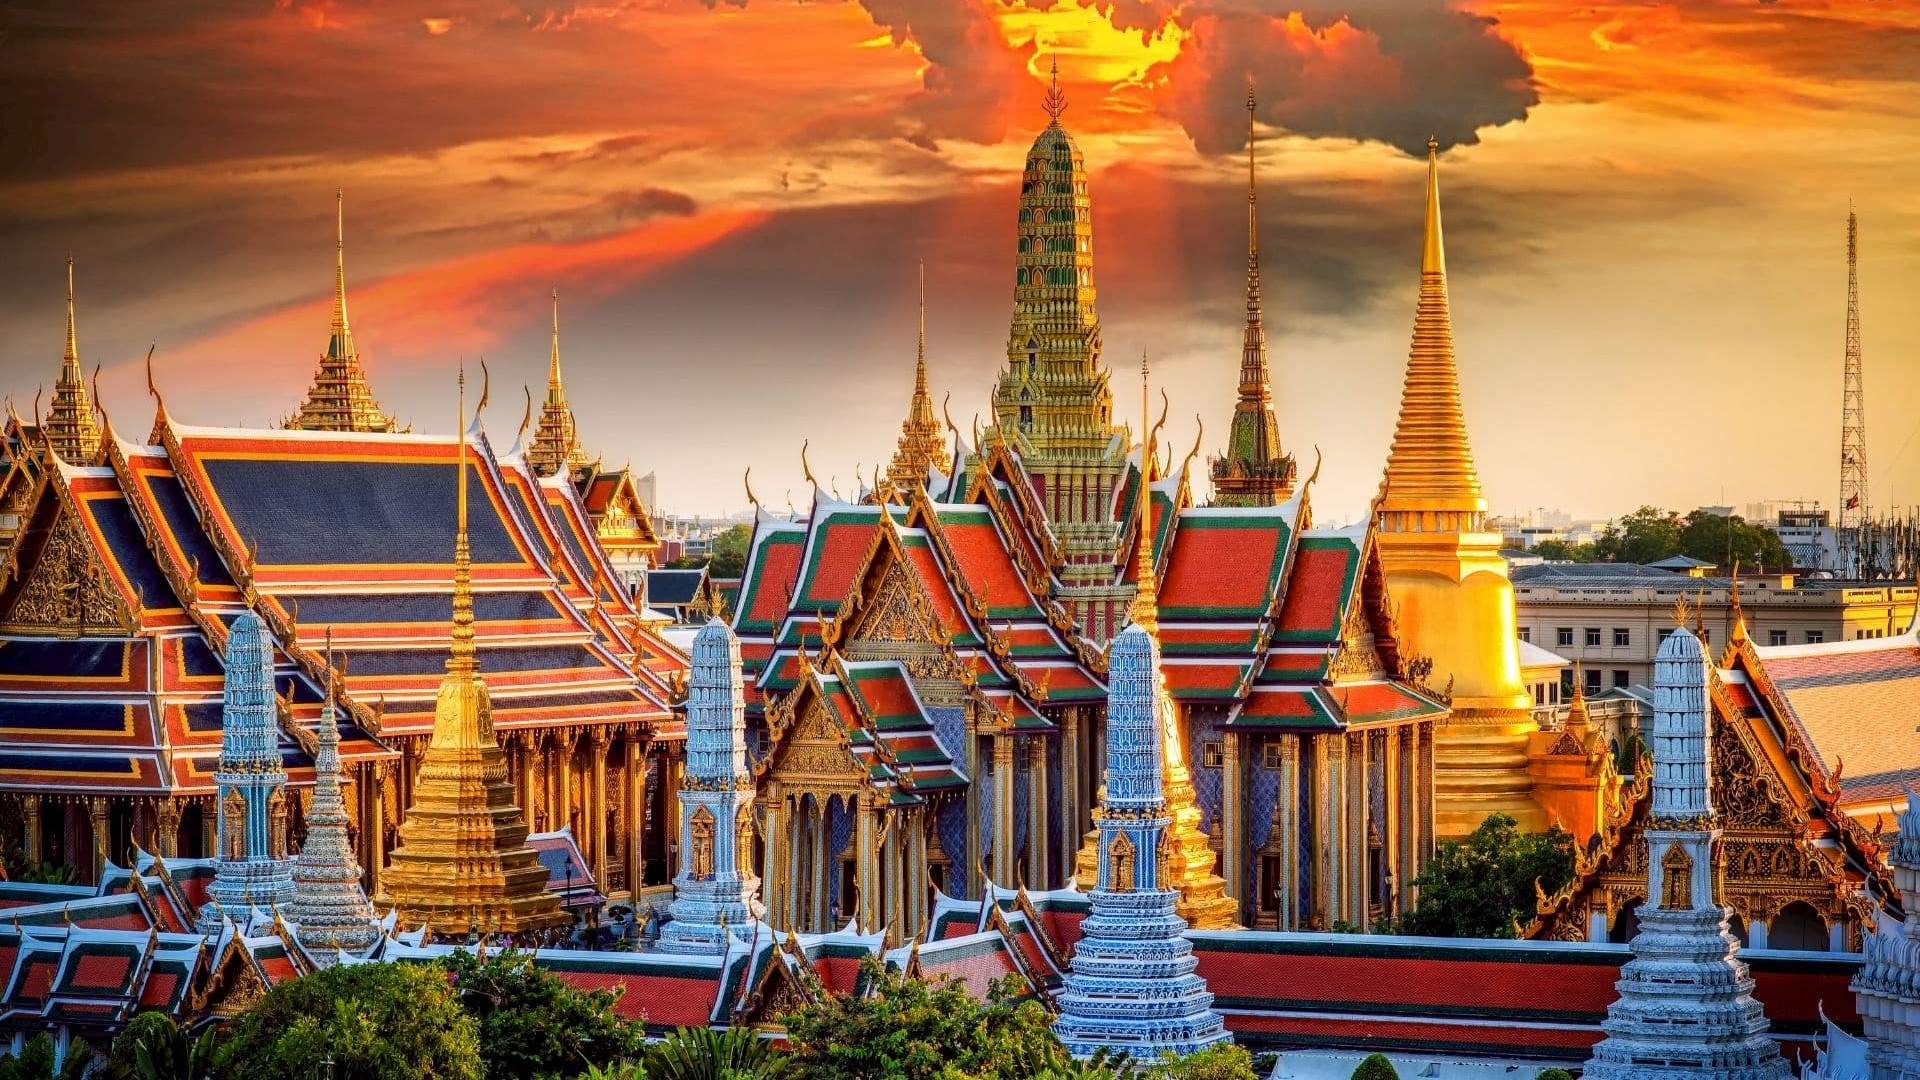 The Grand Palace of Bangkok,Thailand